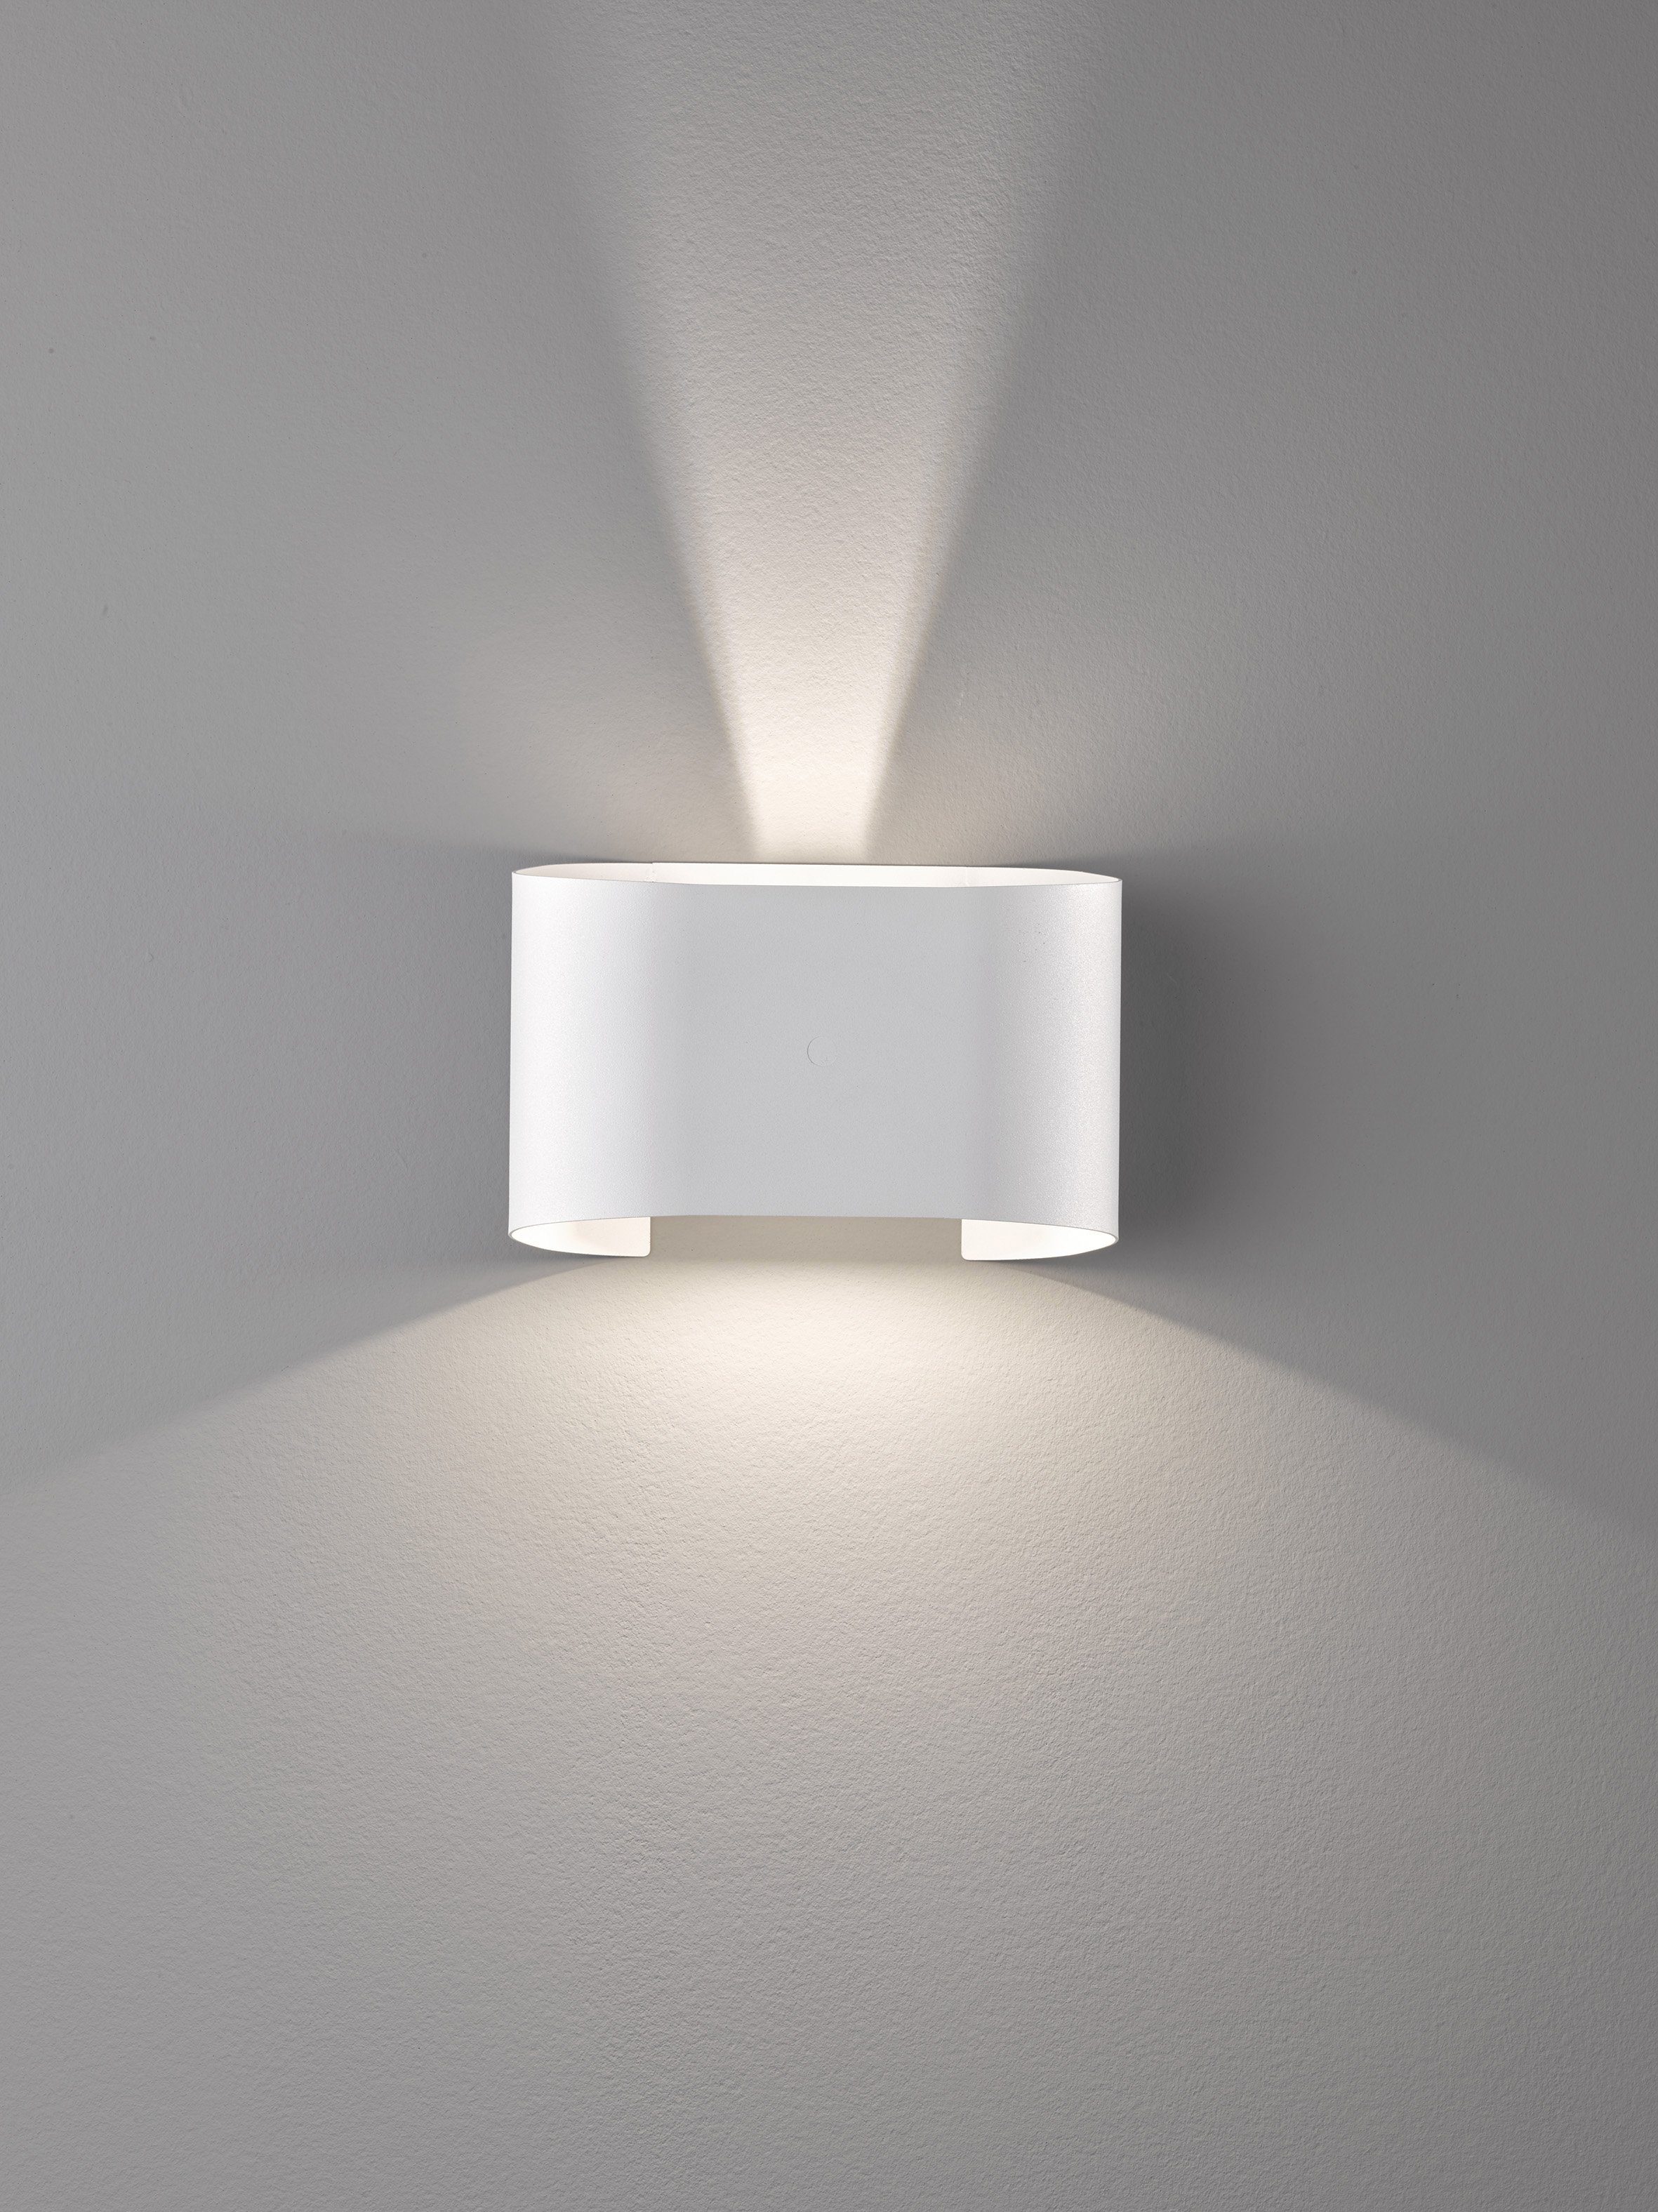 & integriert, LED FISCHER HONSEL LED Wall, fest Warmweiß Wandleuchte Ein-/Ausschalter,